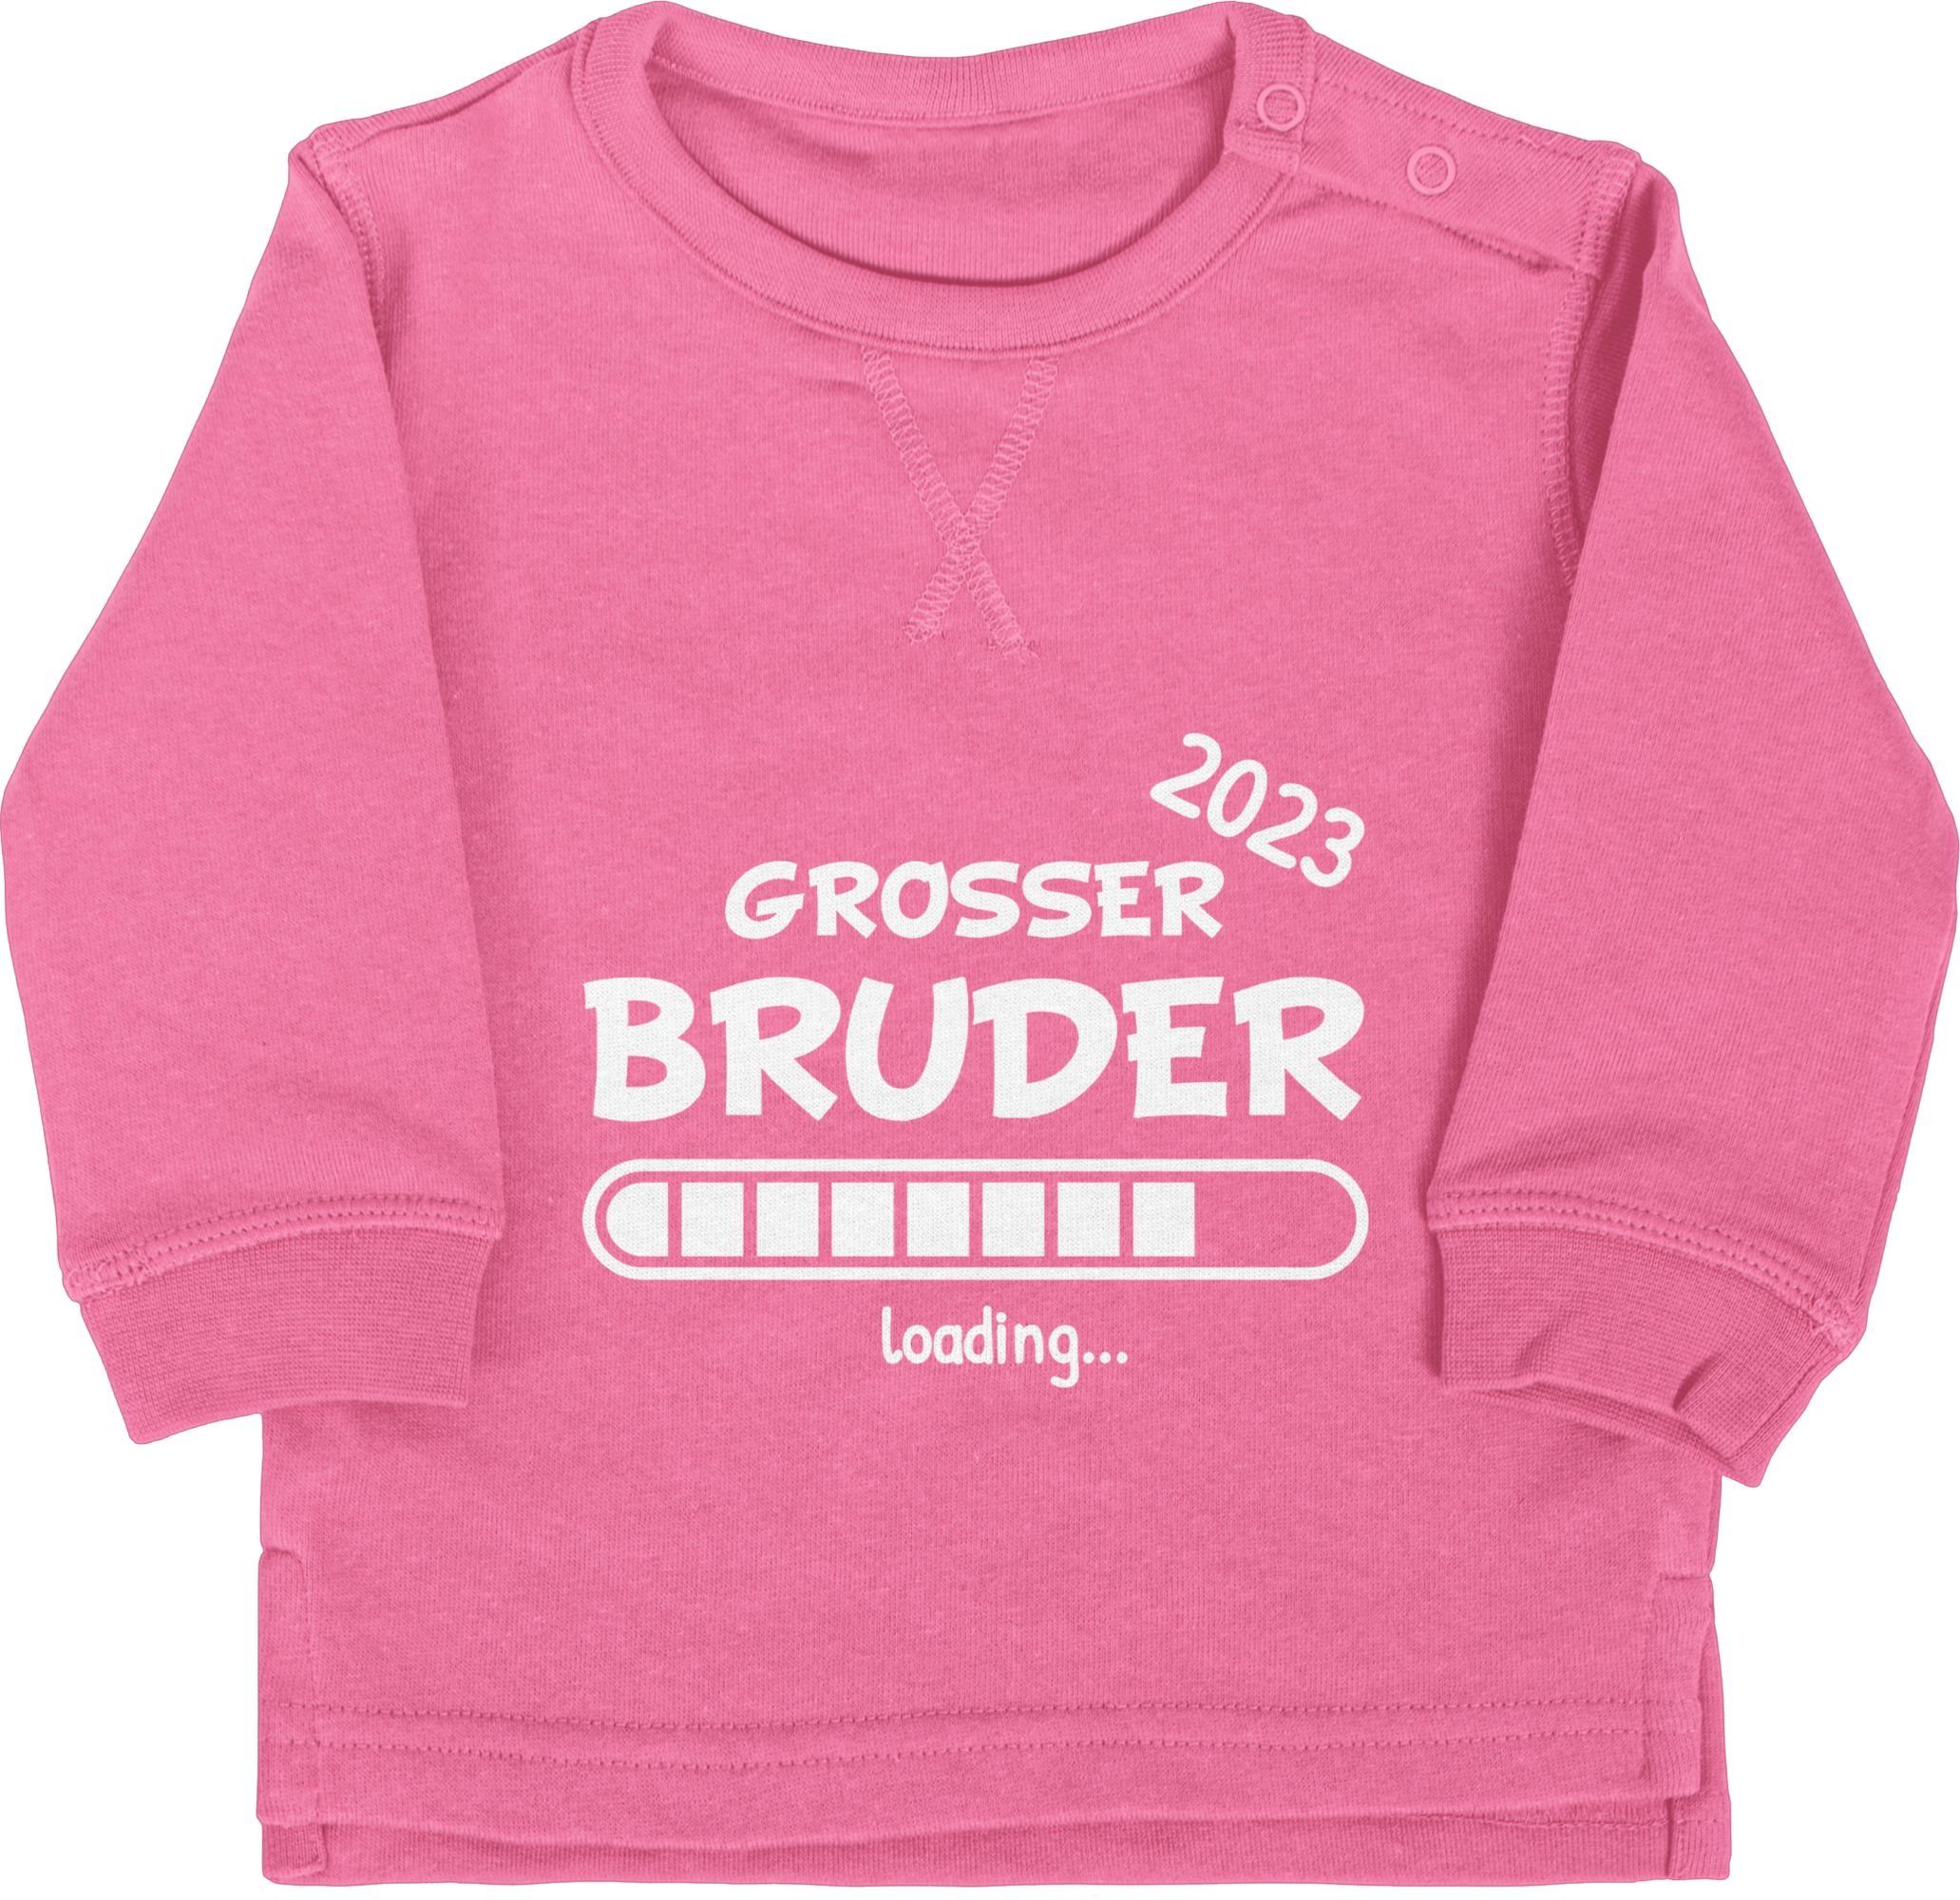 Shirtracer Sweatshirt Bruder 2023 3 loading Großer Pink Bruder Großer